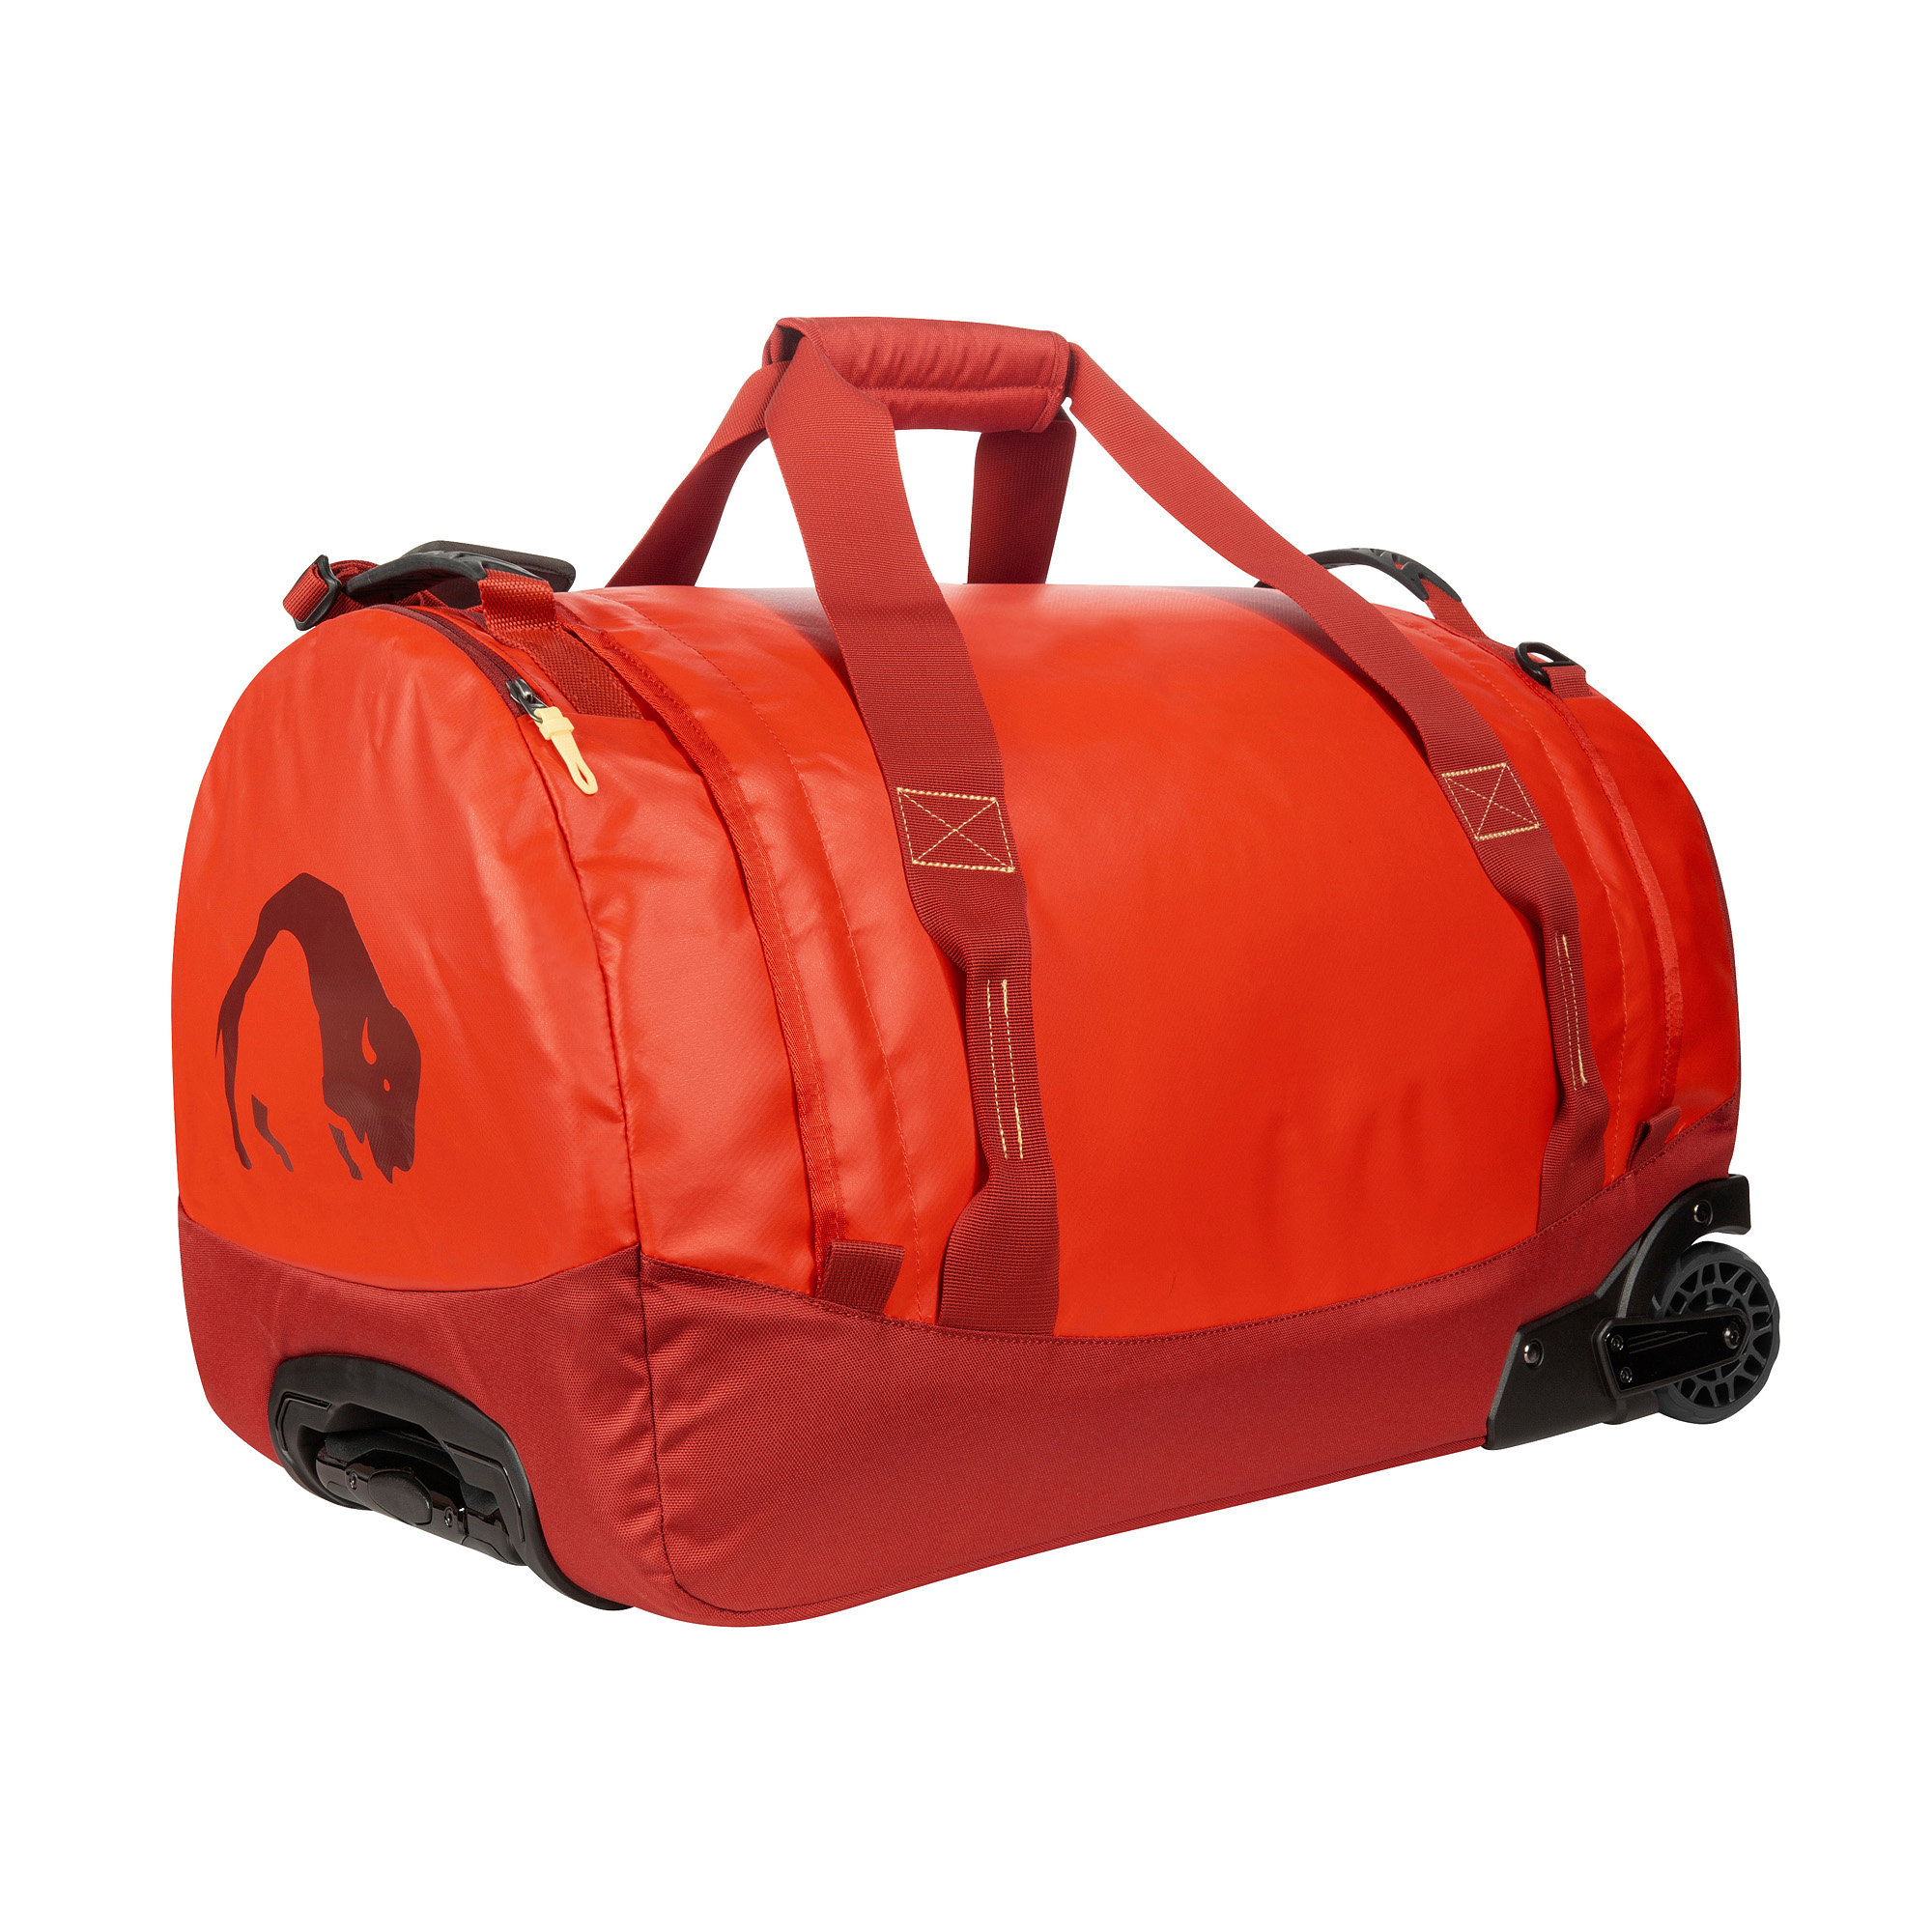 Gepäck, Tatonka Barrel Roller M red orange rot Trolleys & Koffer 4013236335507